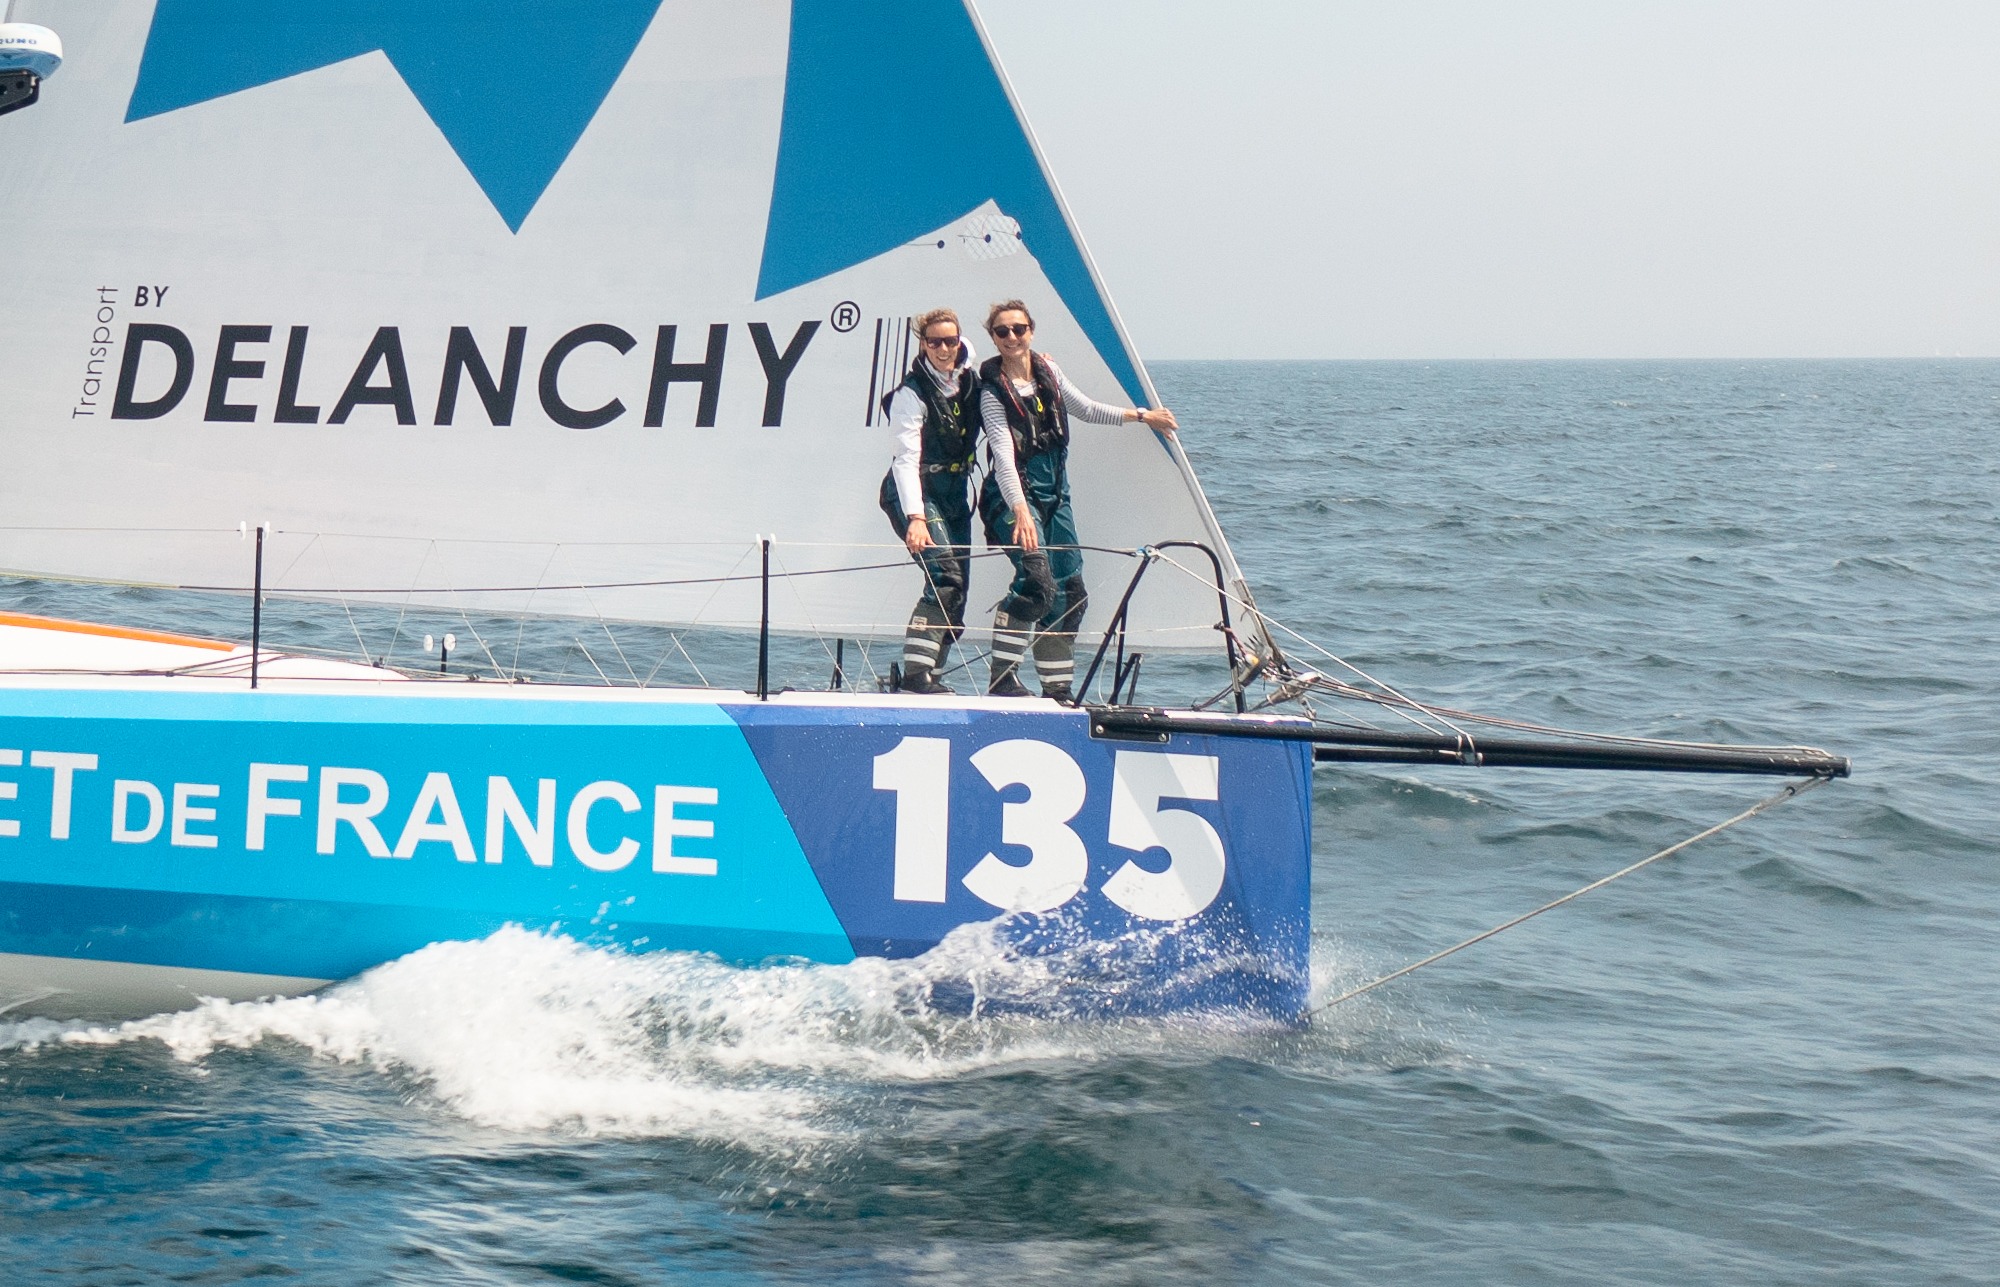 DELANCHY apoya a la tripulación 100% femenina de Les Voileuses au Large